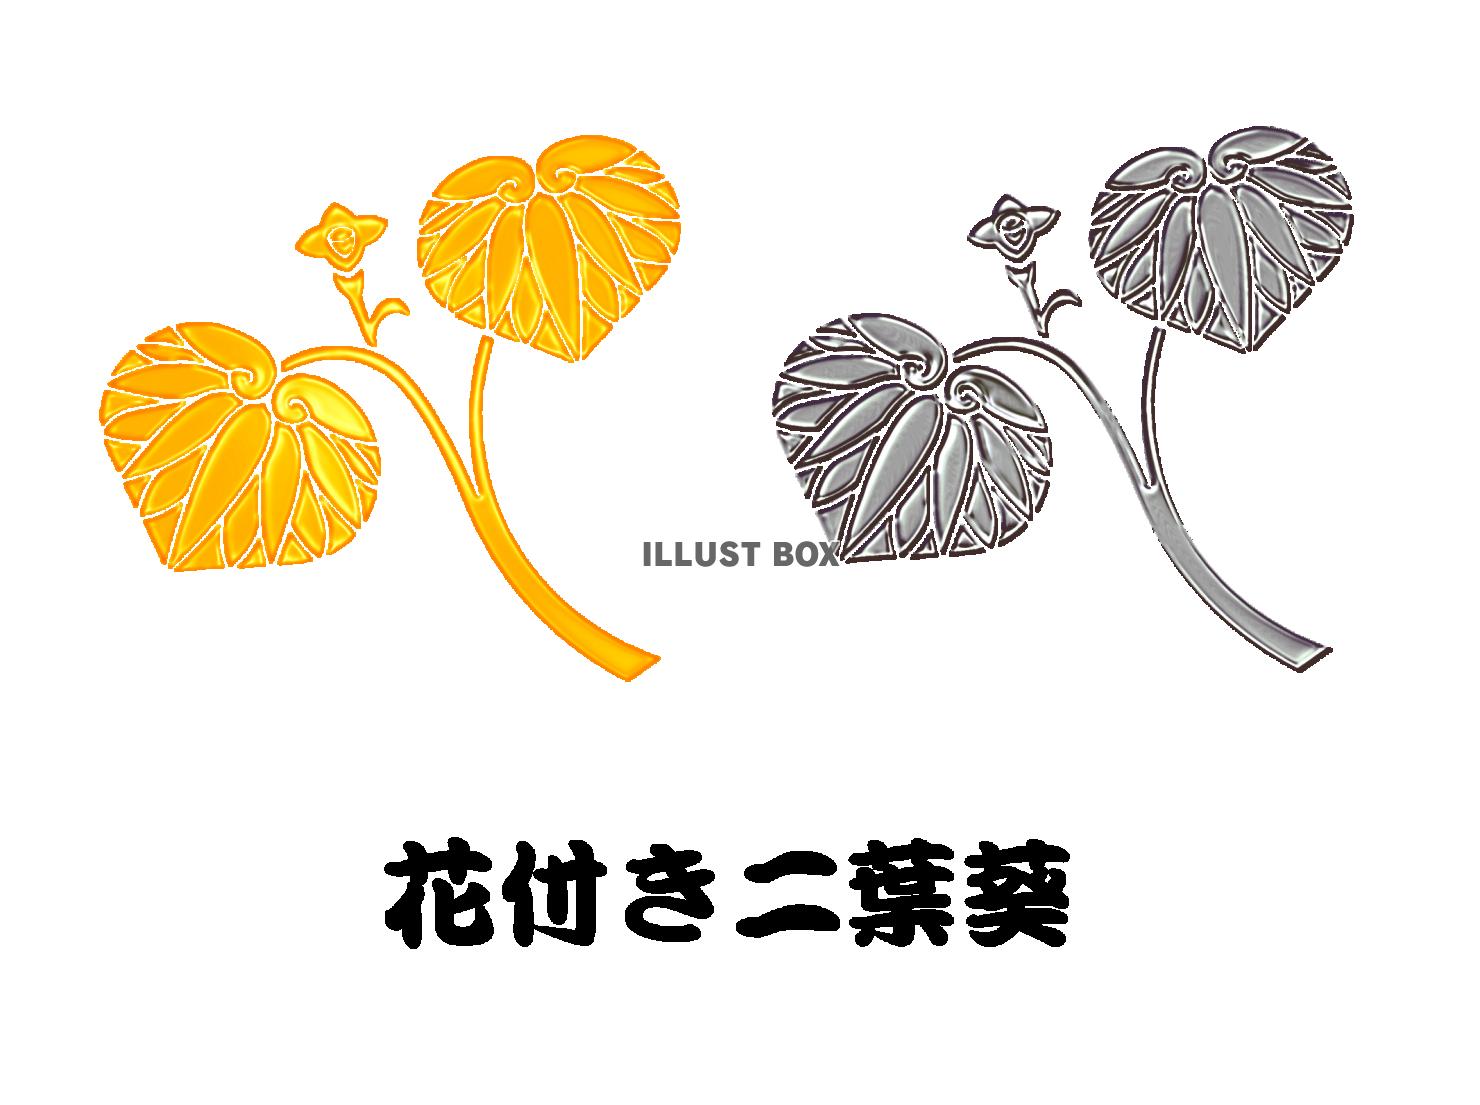 メタル家紋ー花付き2葉葵